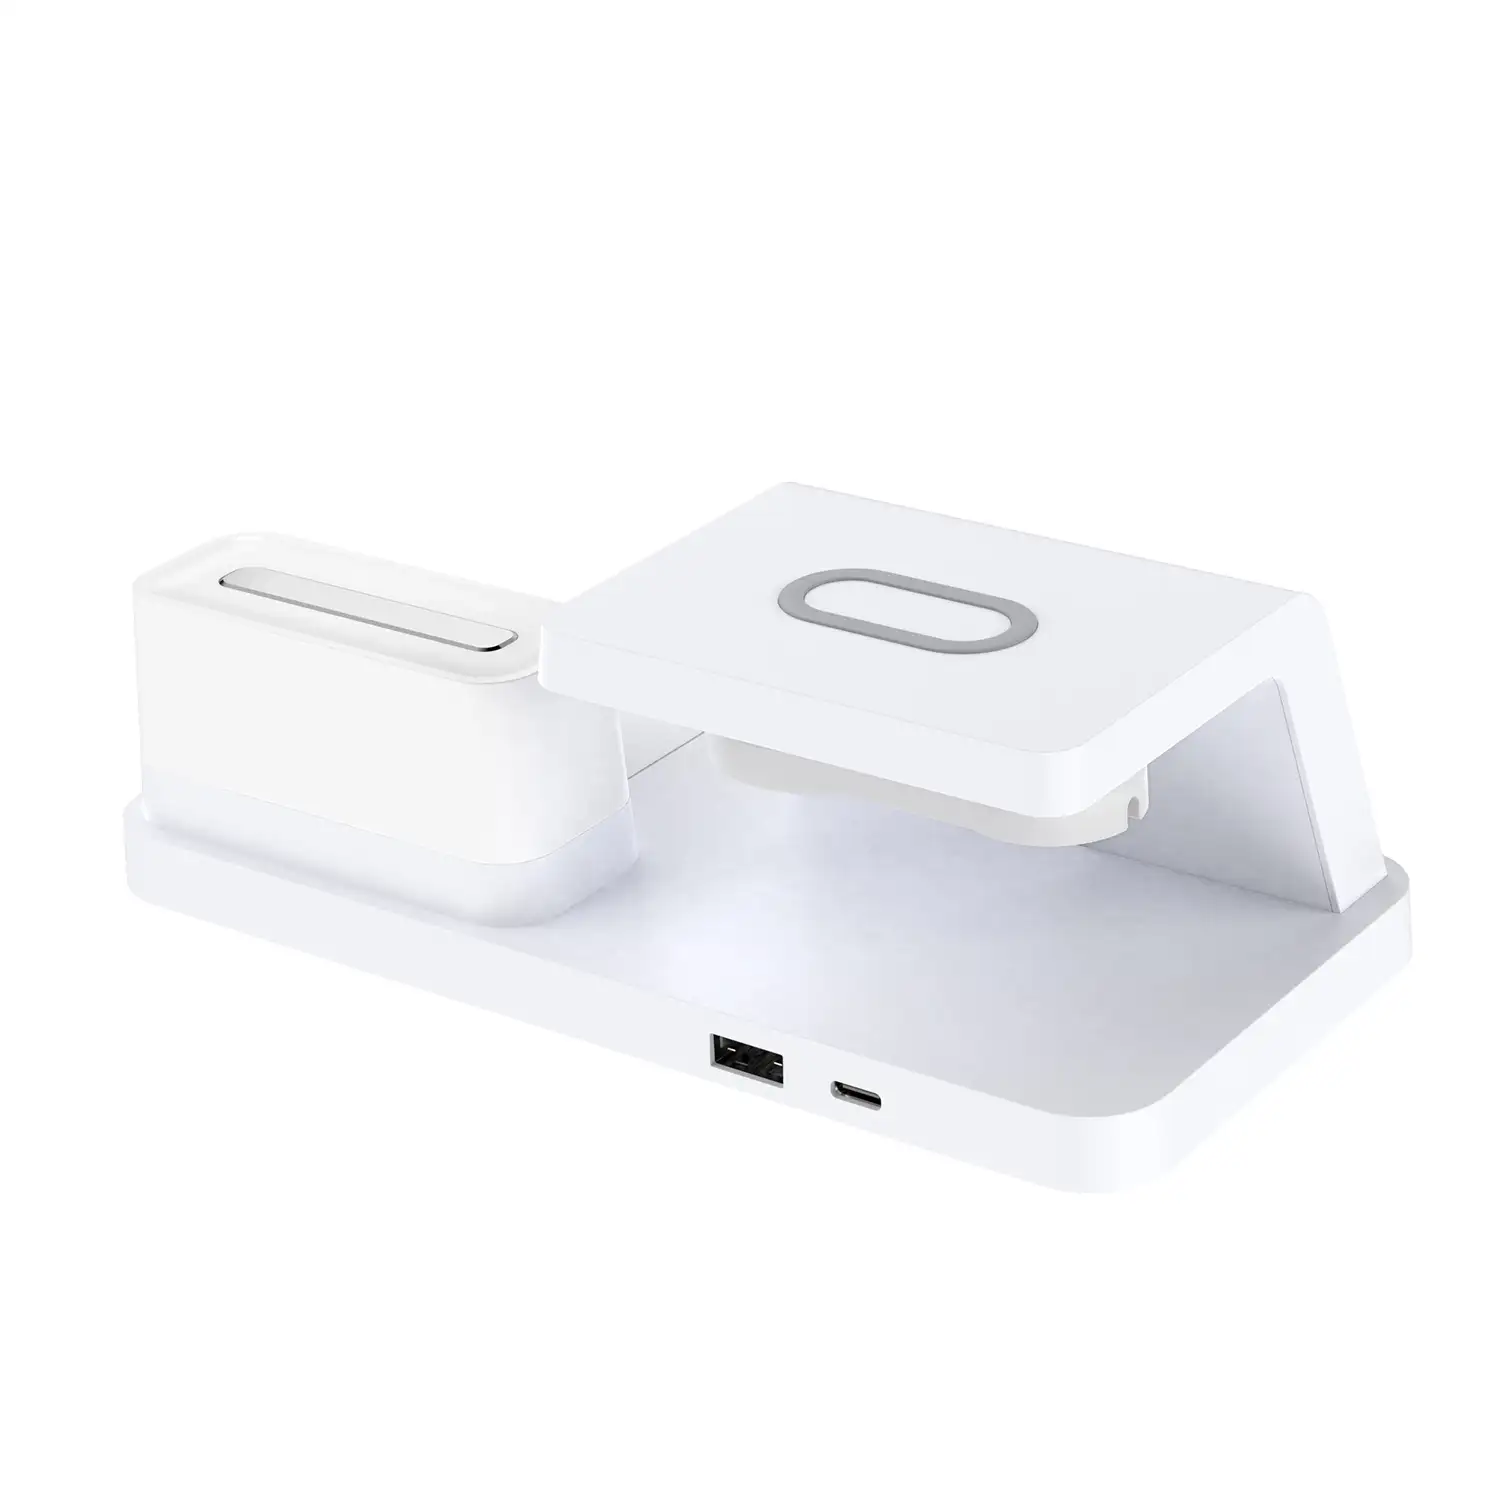 Cargador inalámbrico multifunción 6 en 1: cargador inalámbrico Qi 15W, cargador inalámbrico para auriculares, USB, Apple Watch, luz ambiental y reloj despertador.